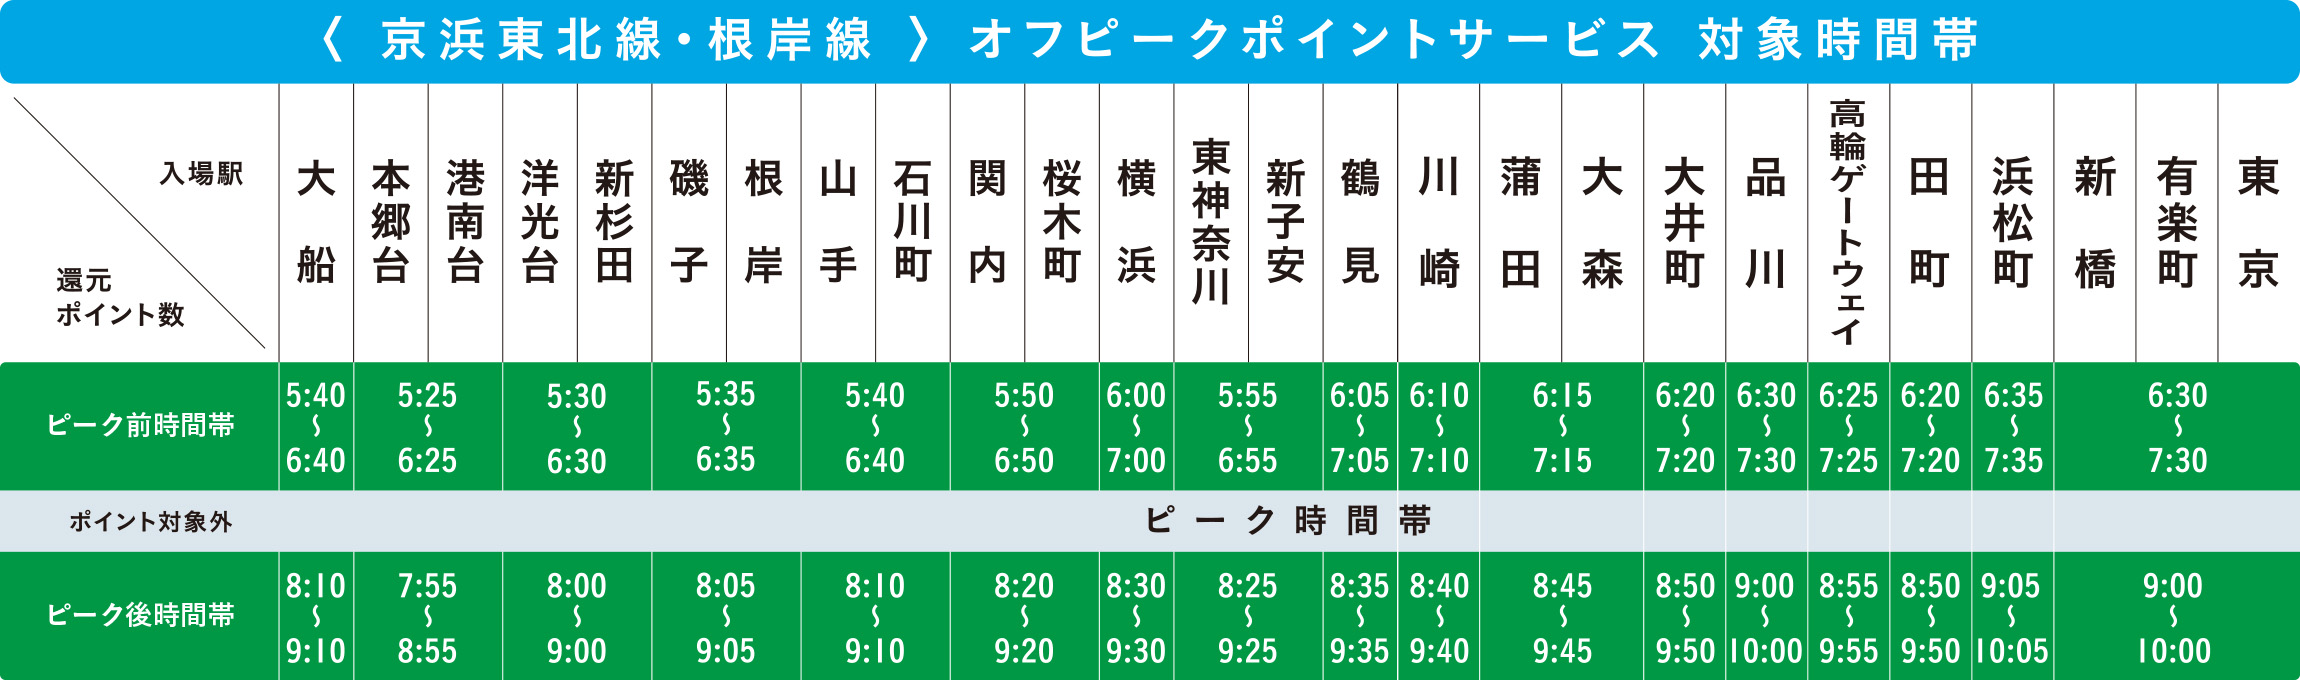 京浜東北線（東京以南）・根岸線オフピークポイントサービス対象時間帯